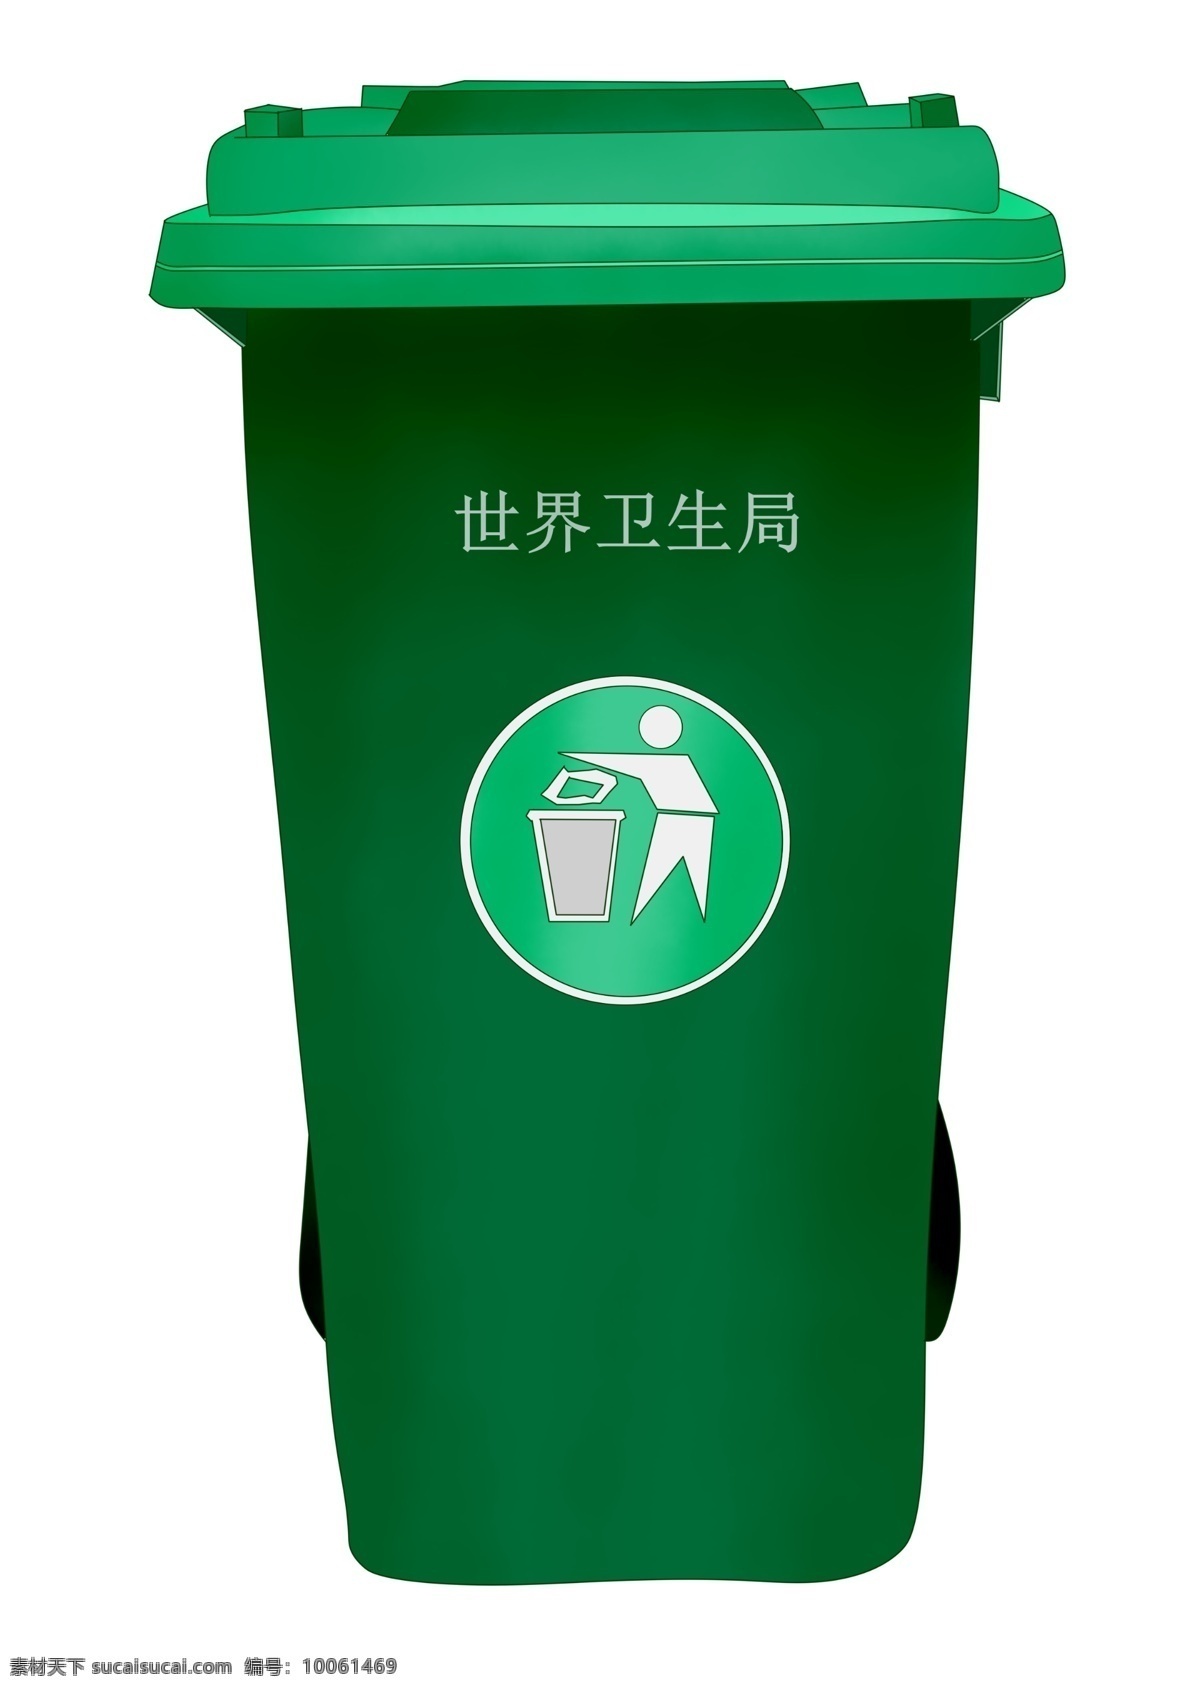 绿色 卫生局 垃圾箱 绿色垃圾箱 插图 循环利用 分类处理 垃圾回收 绿色垃圾桶 卫生